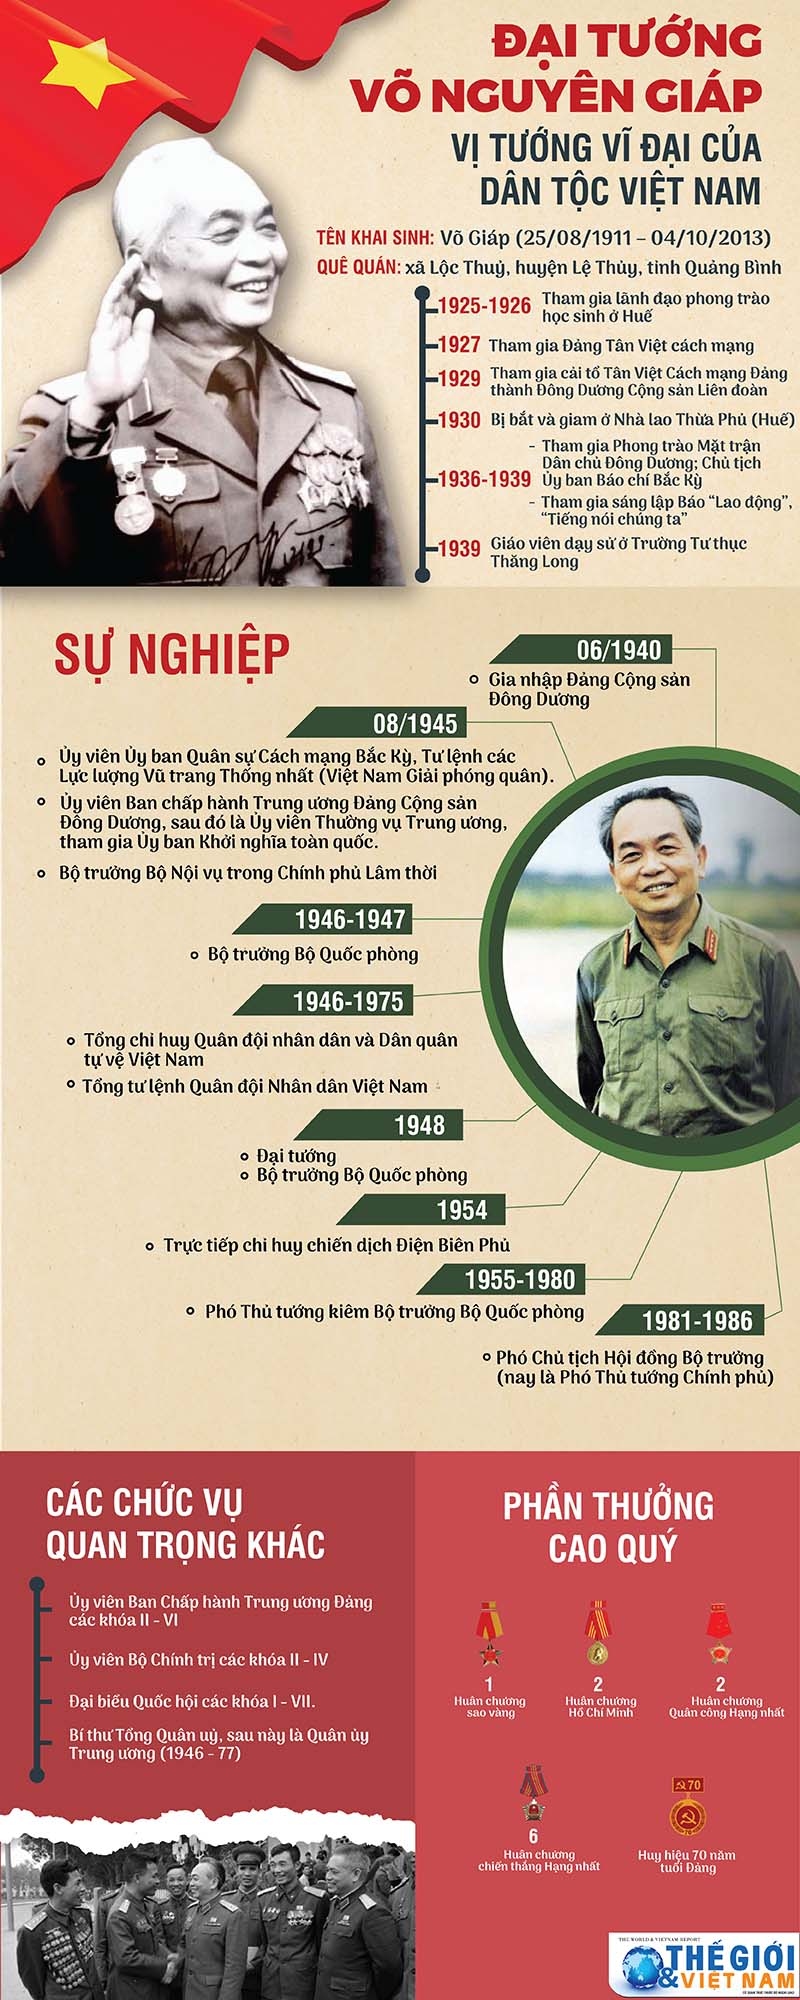 Đại tướng Võ Nguyên Giáp - Vị tướng vĩ đại của dân tộc Việt Nam